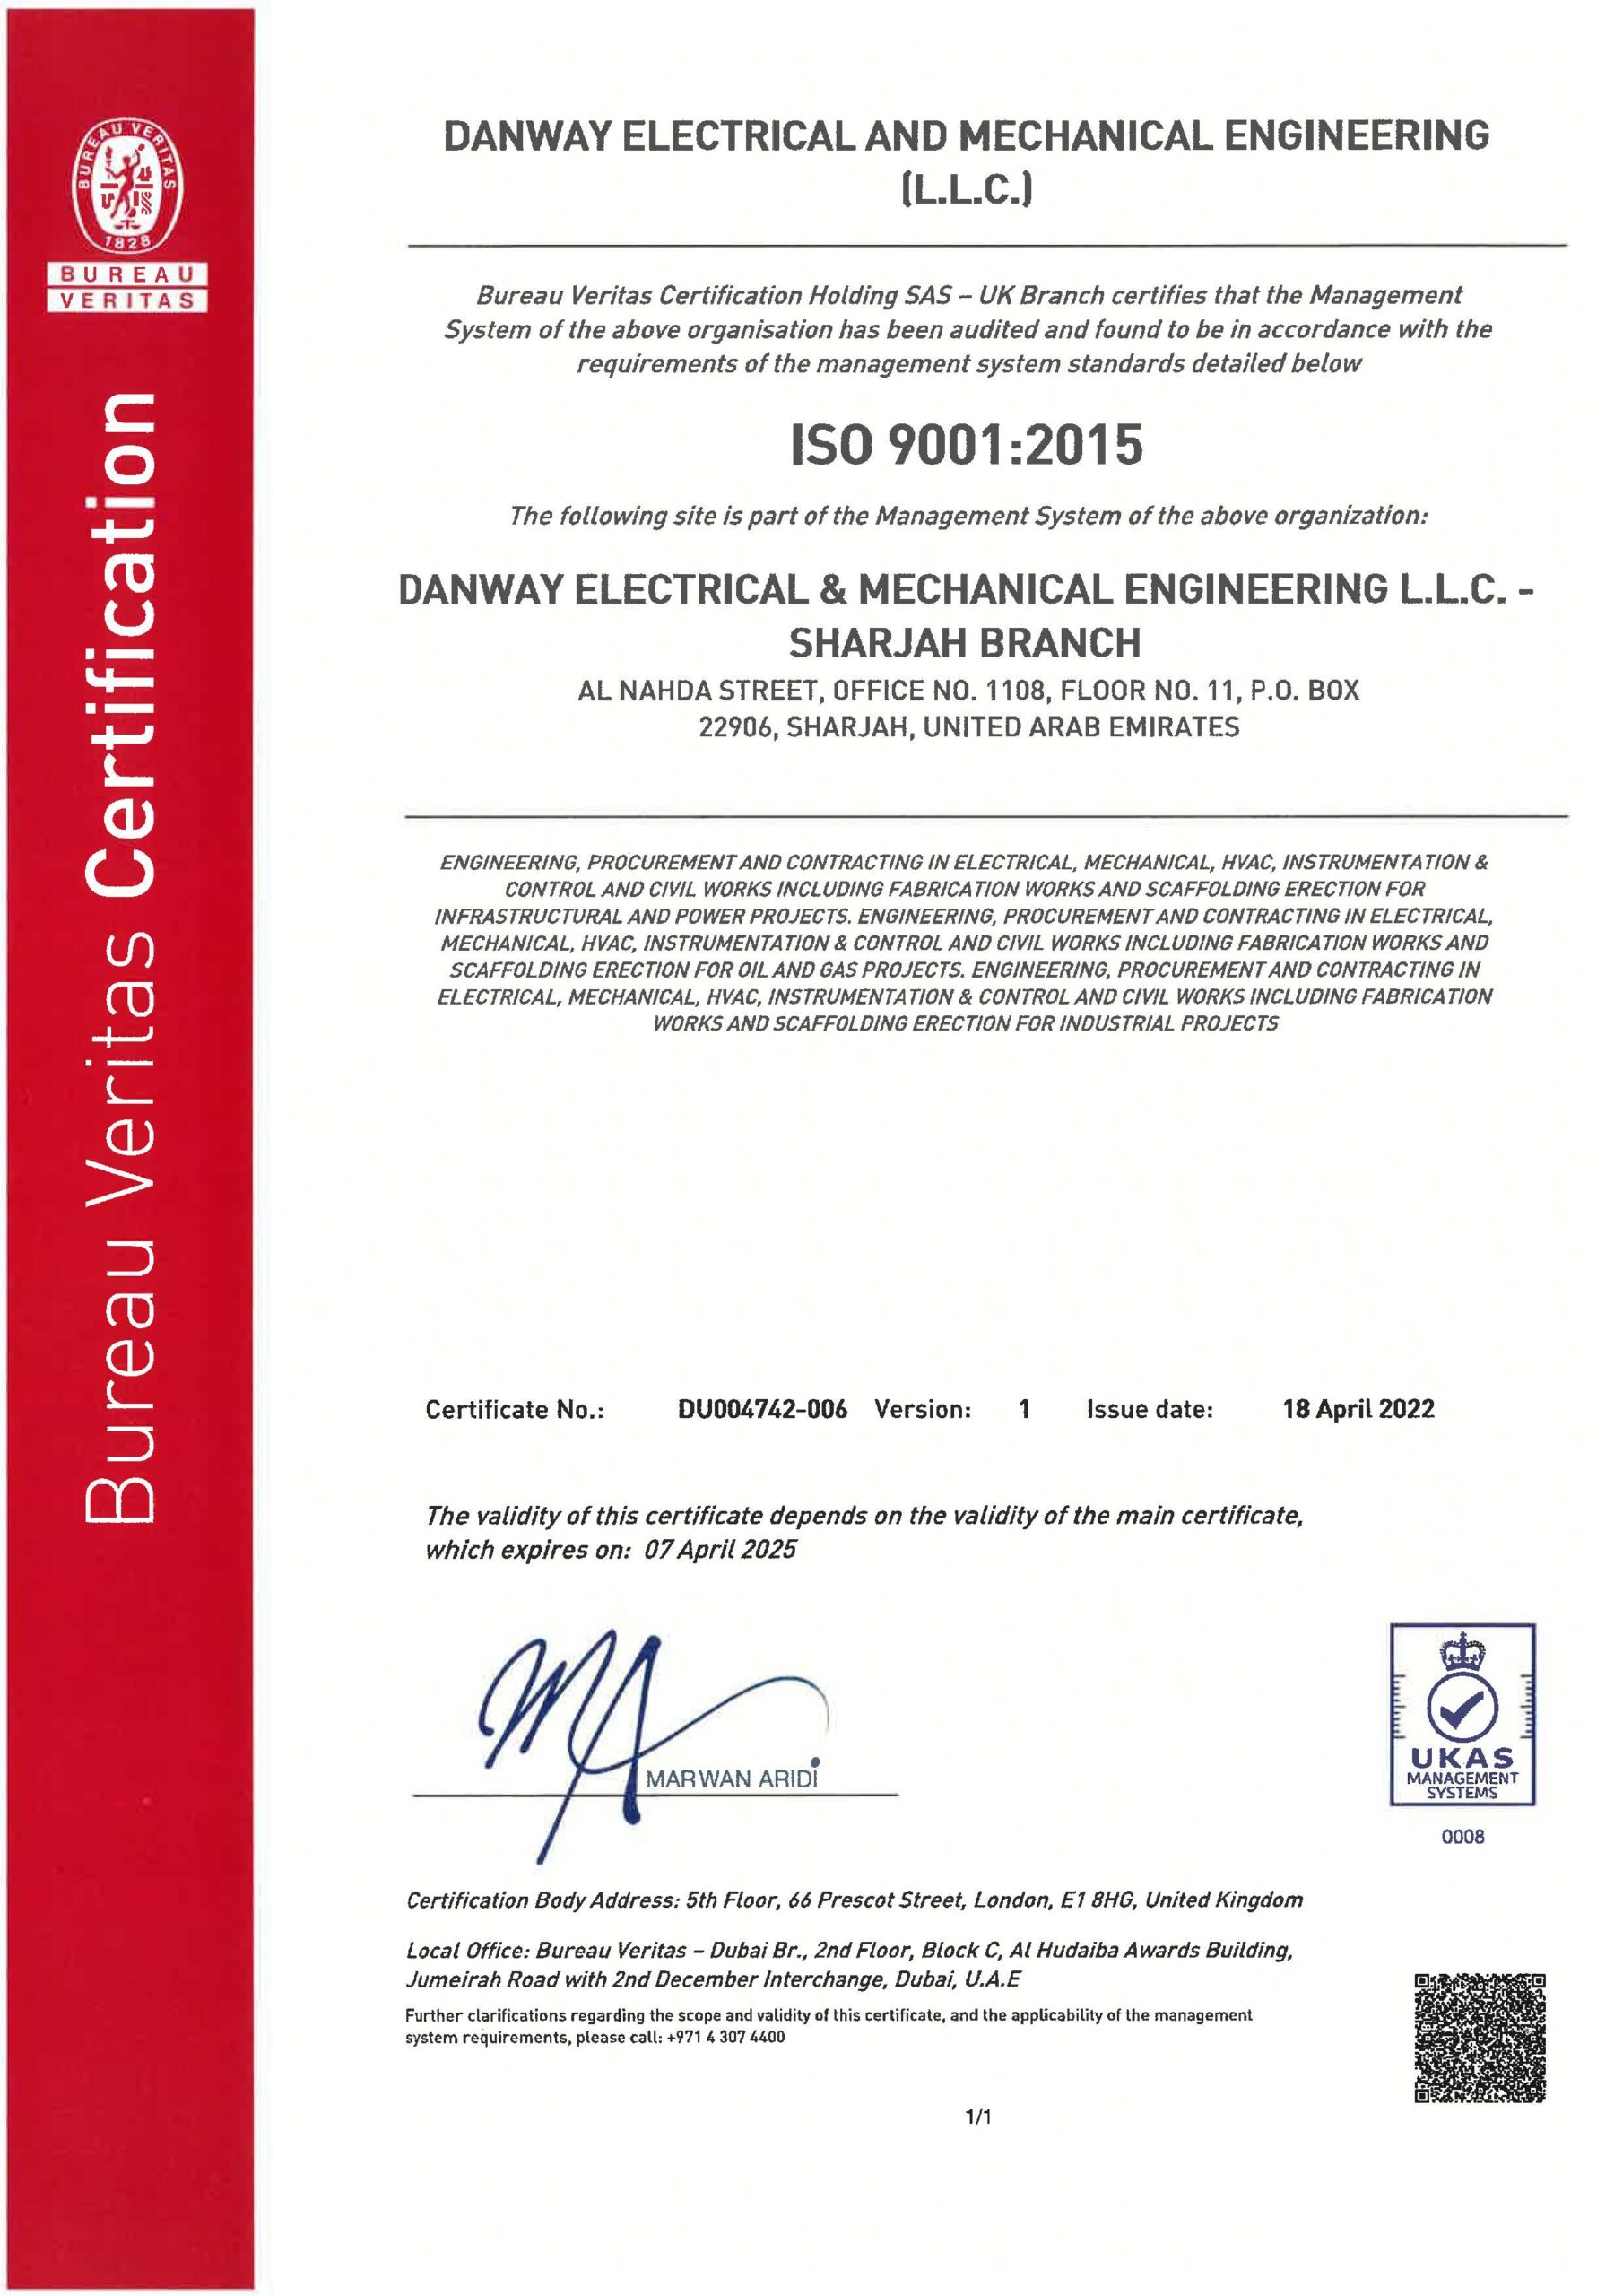 ISO9001:2015 Danway EME, Sharjah